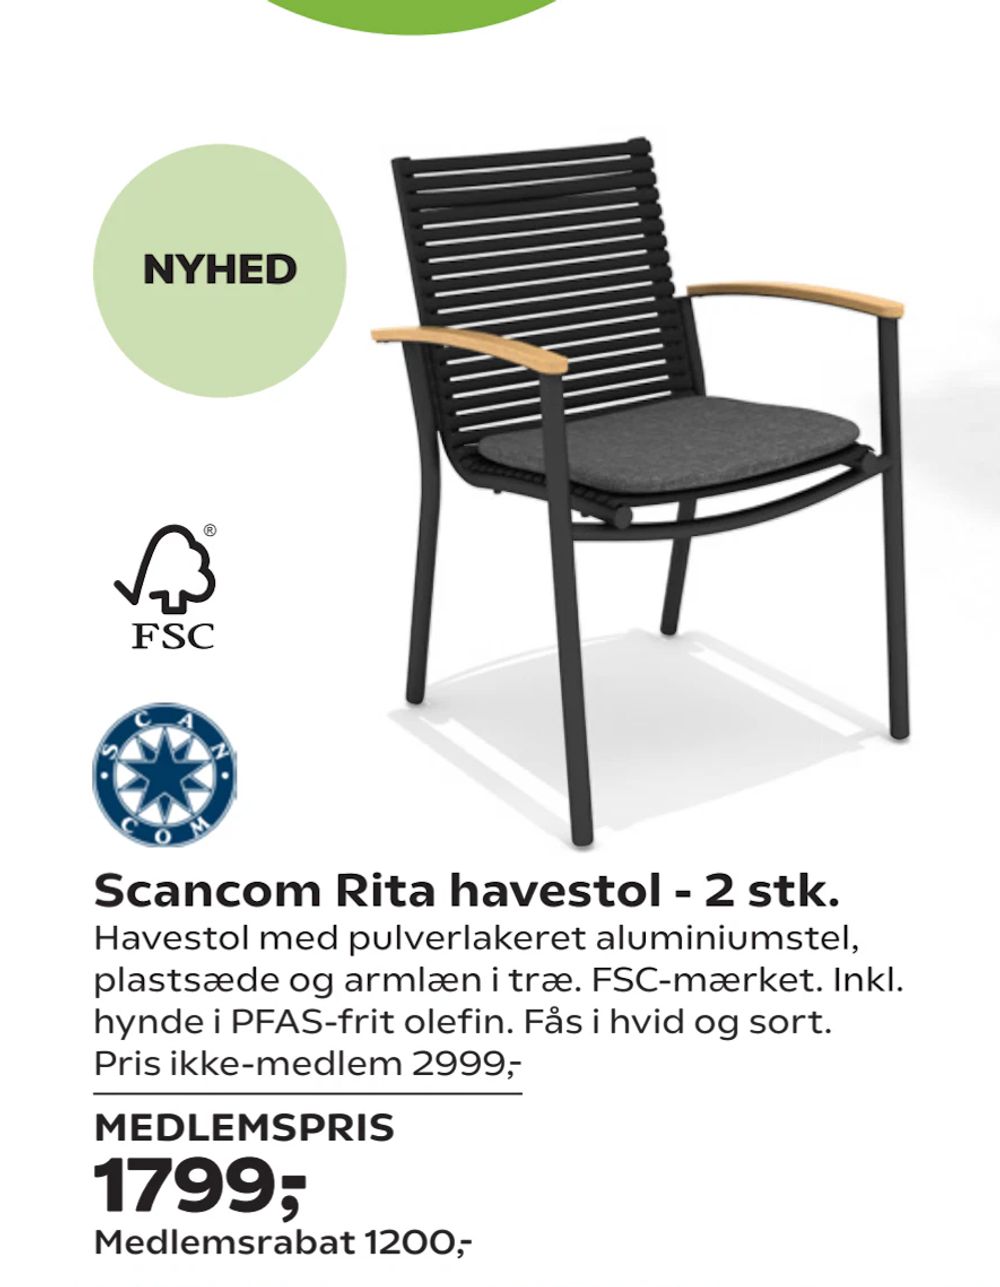 Tilbud på Scancom Rita havestol - 2 stk. fra Coop.dk til 2.999 kr.